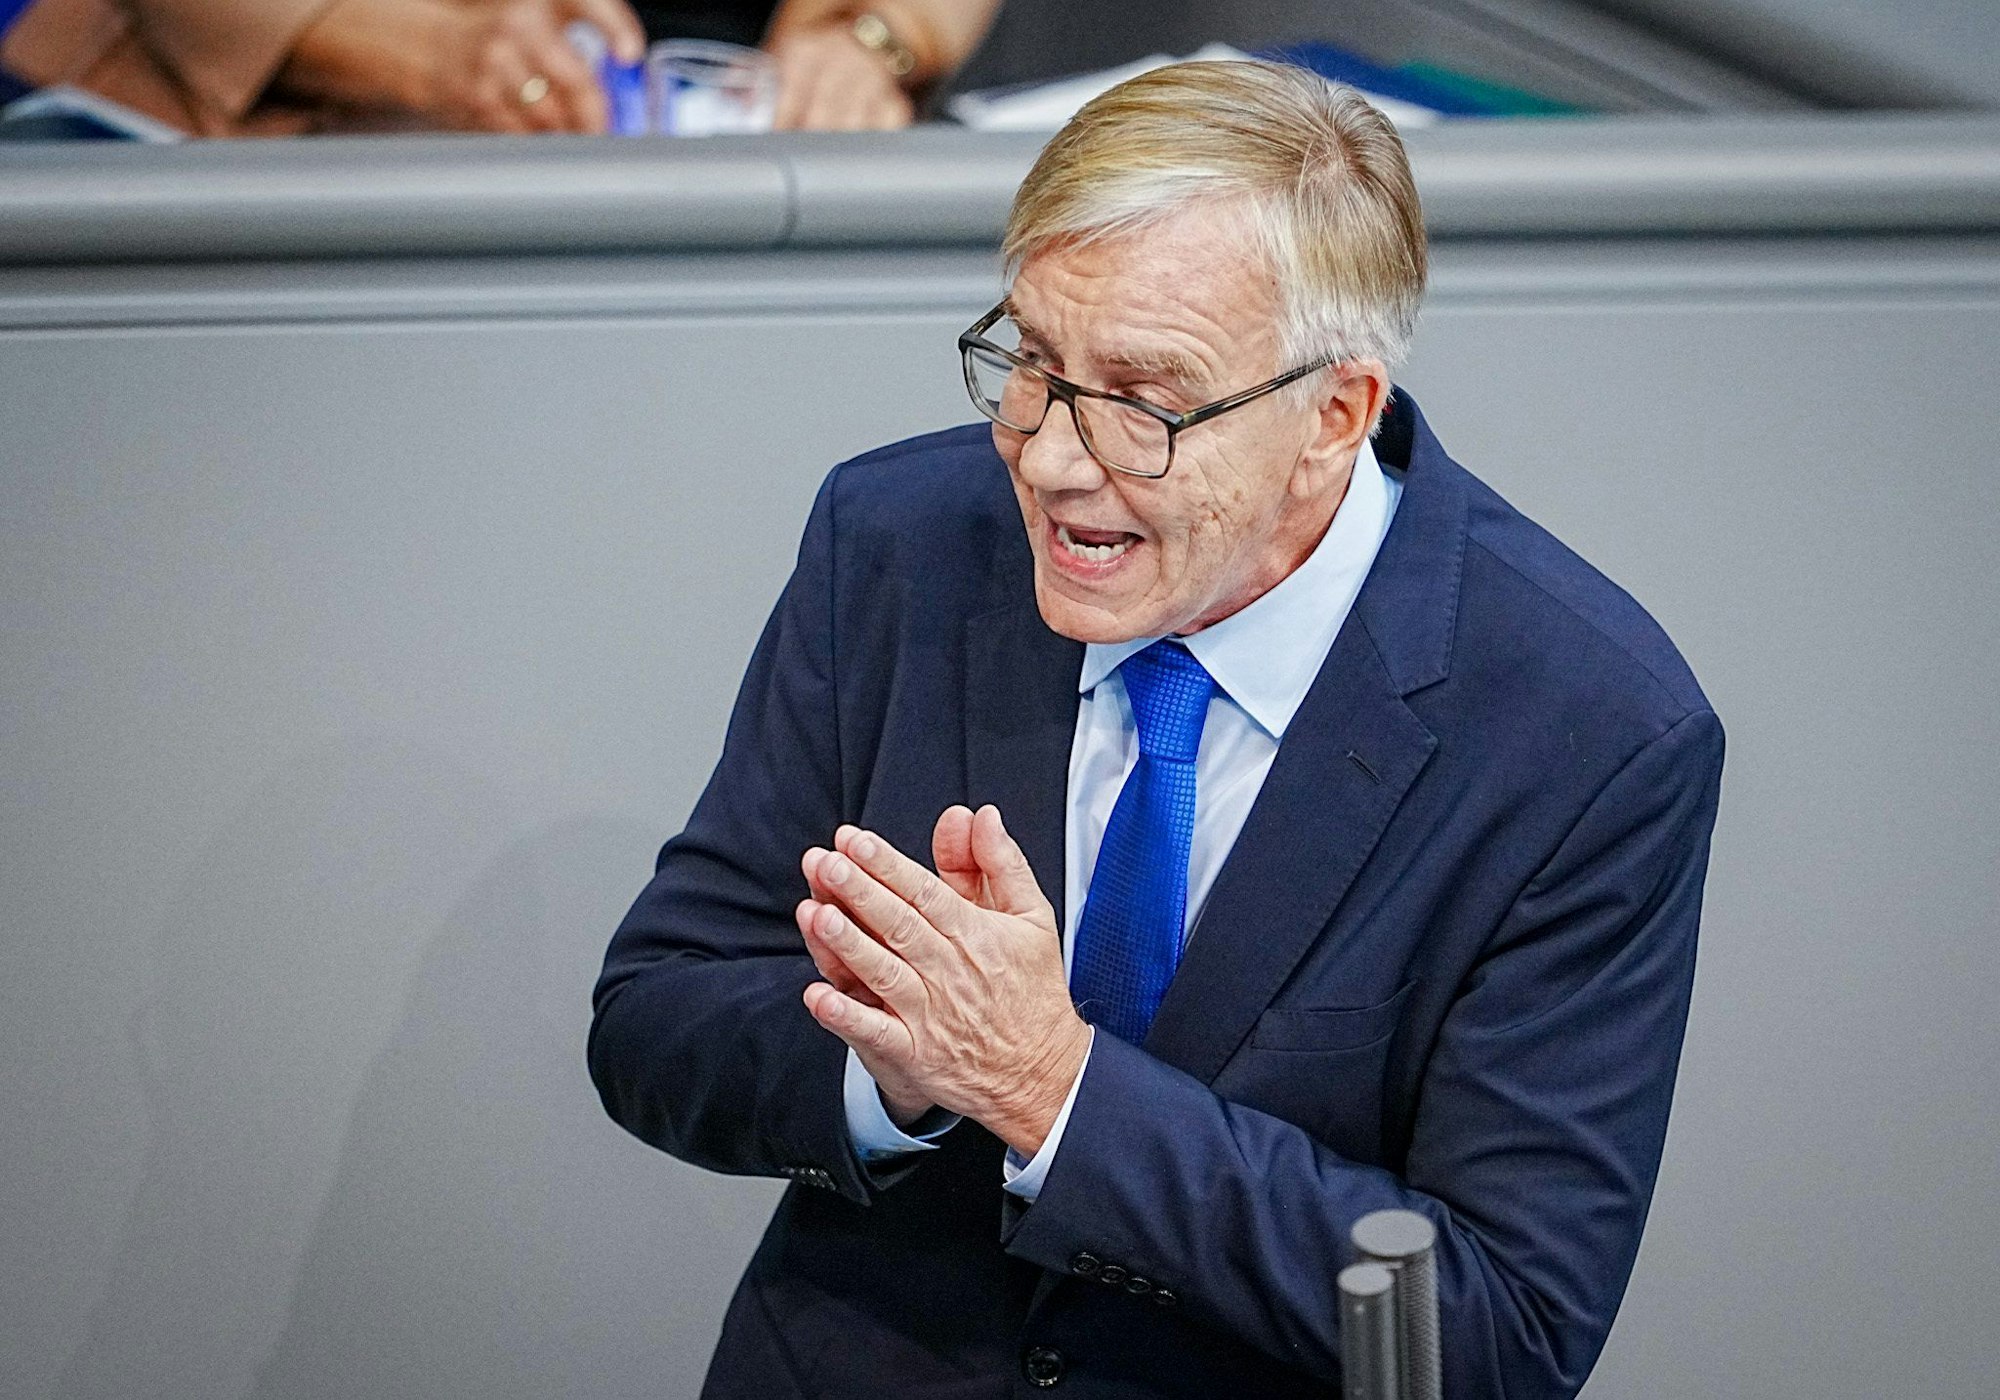 Dietmar Bartsch, Fraktionsvorsitzender der Partei Die Linke, spricht im Bundestag an der Generaldebatte der Haushaltswoche.